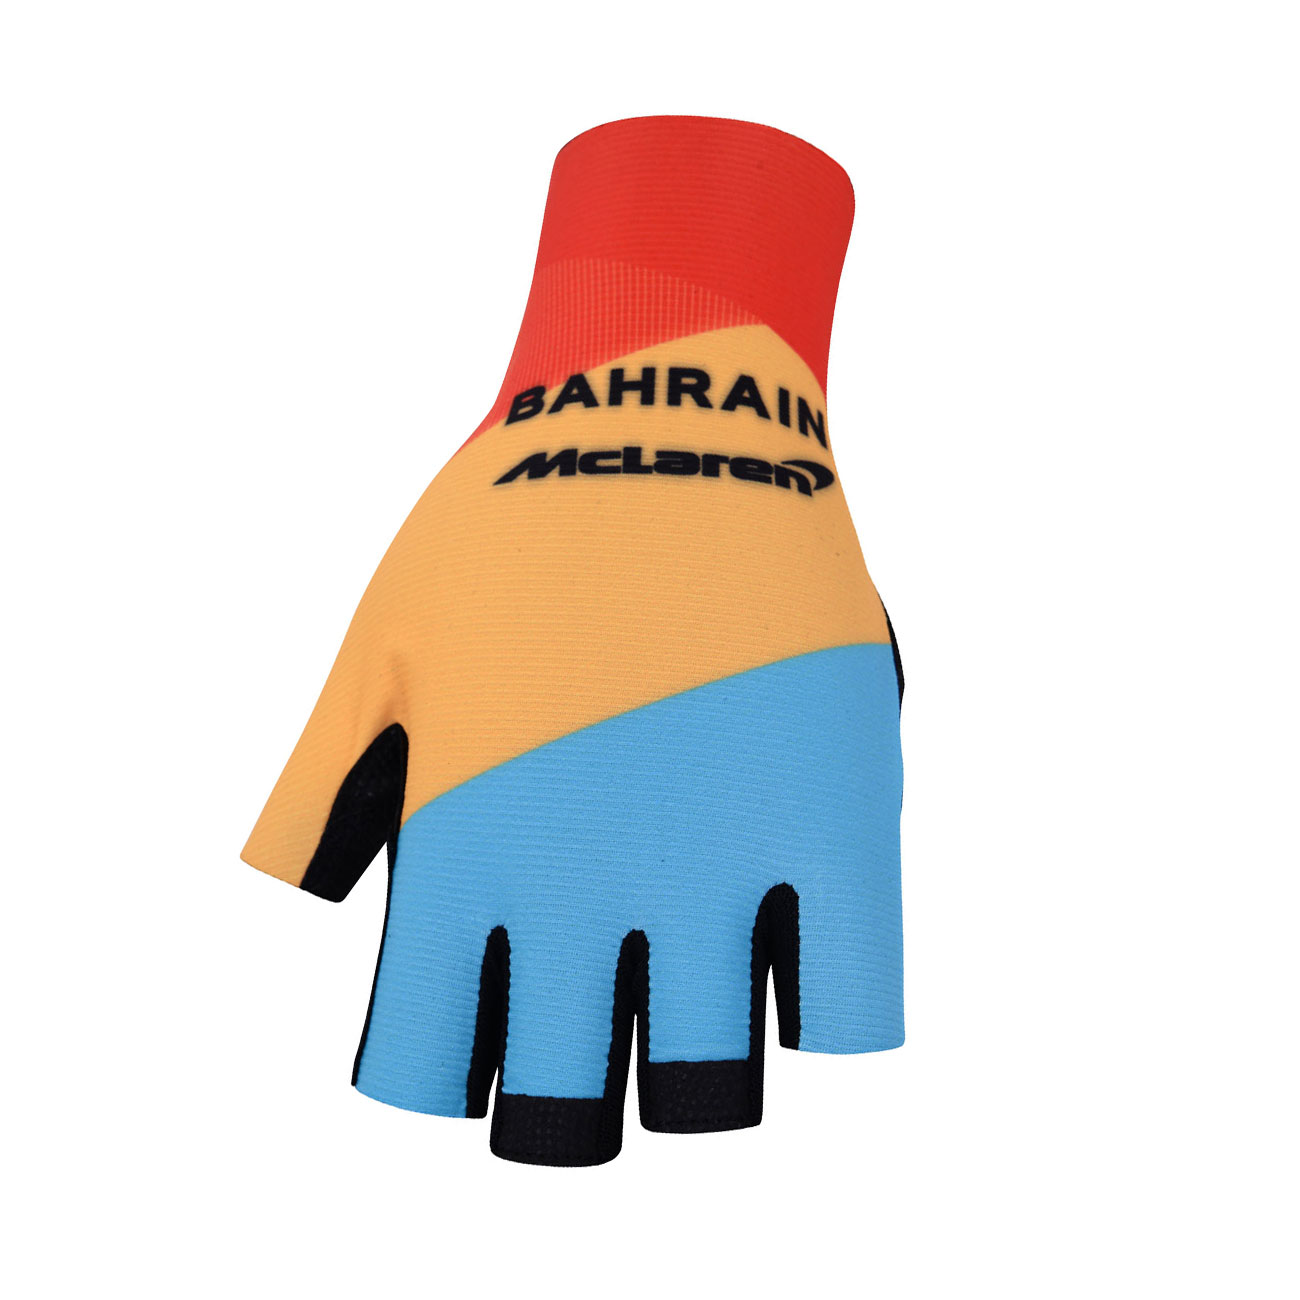 BONAVELO Kolarskie Rękawiczki Z Krótkimi Palcami - BAHRAIN MCLAREN - żółty/czerwony